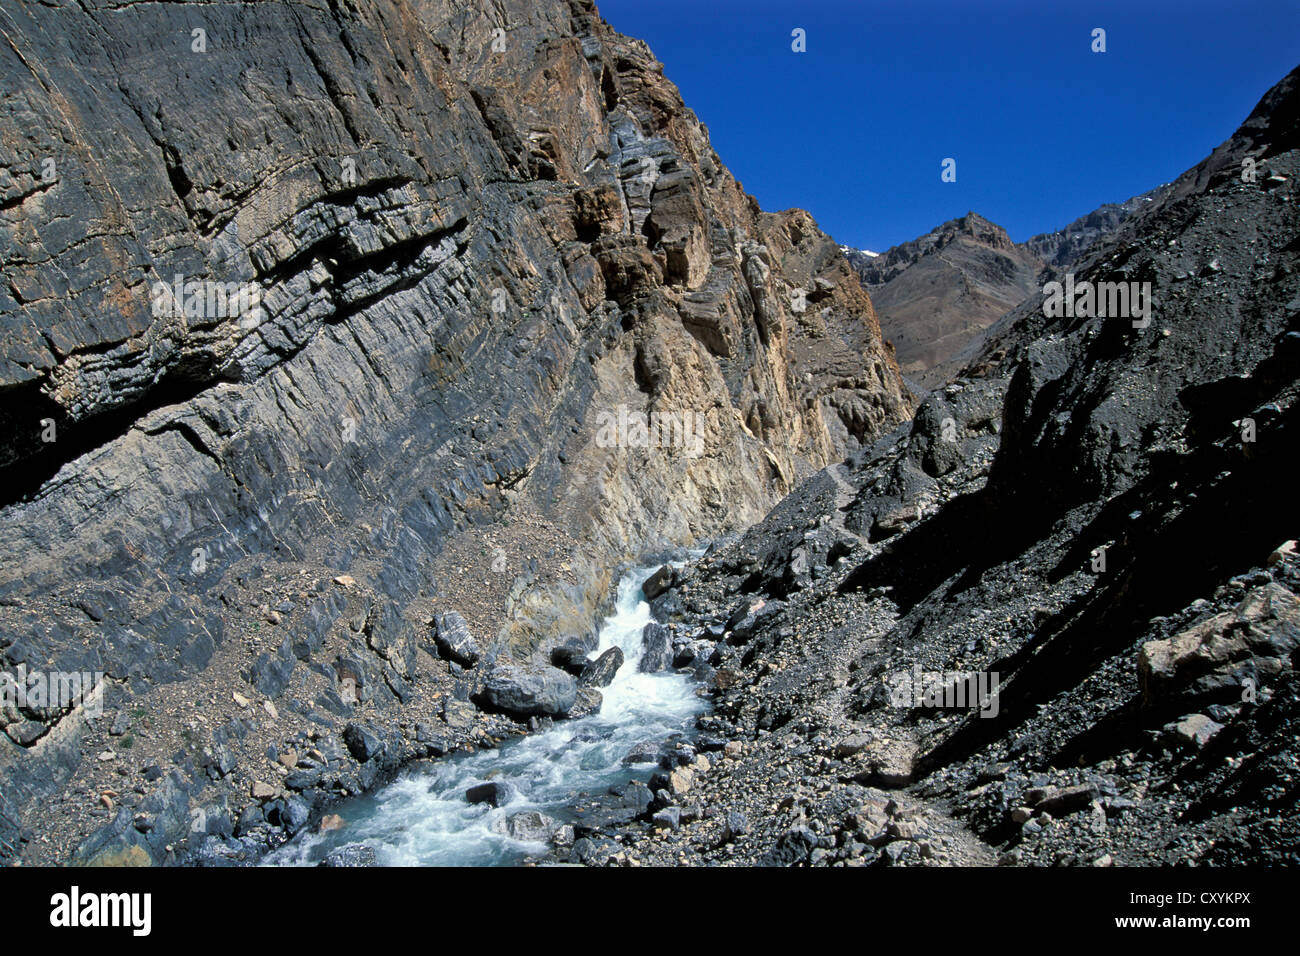 Raglungbi Kibber-Karzok Kibber, près de Gorge-Trail, l'Himachal Pradesh, Himalaya indien, l'Inde du Nord, Inde, Asie Banque D'Images